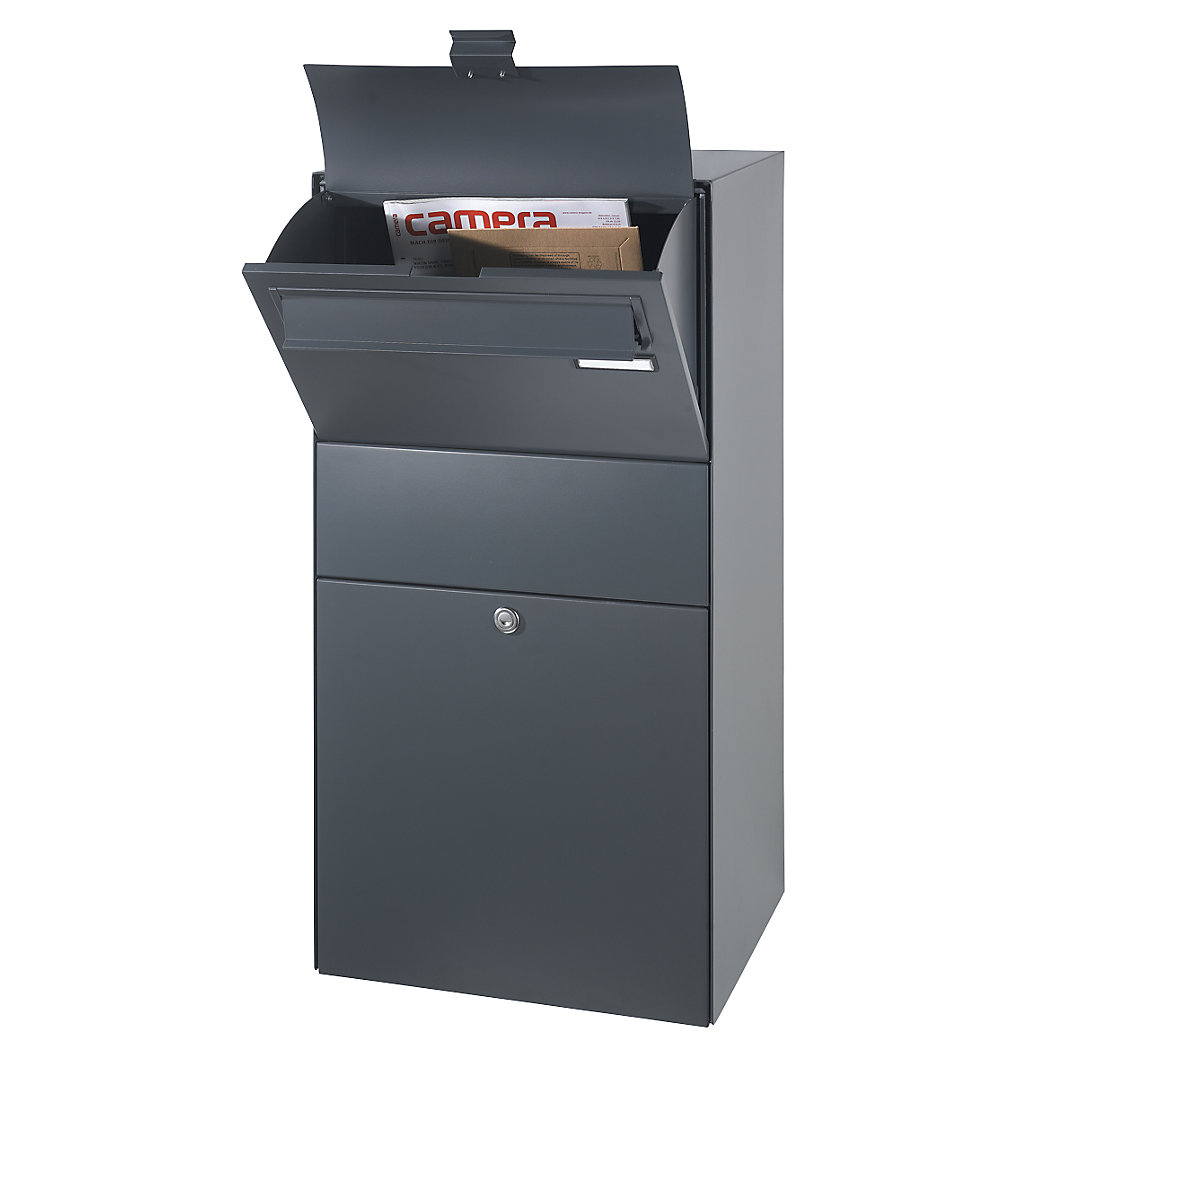 Caixa de despacho, com tampa de inserção para cartas, cinzento antracite RAL 7016